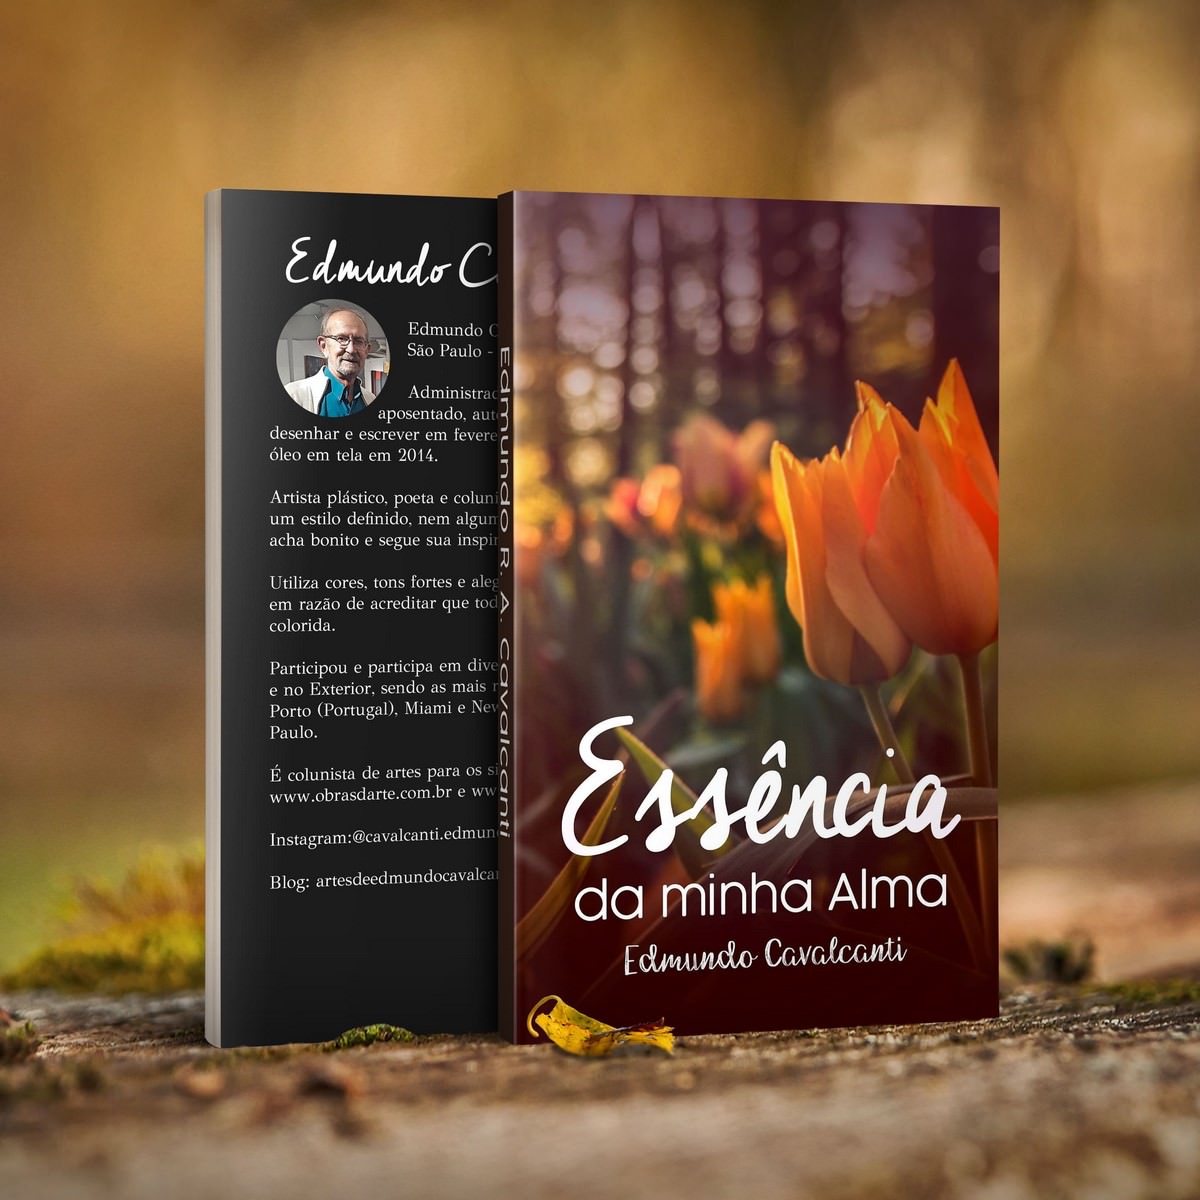 E-book: "Essência da minha Alma", capa. Divulgação.